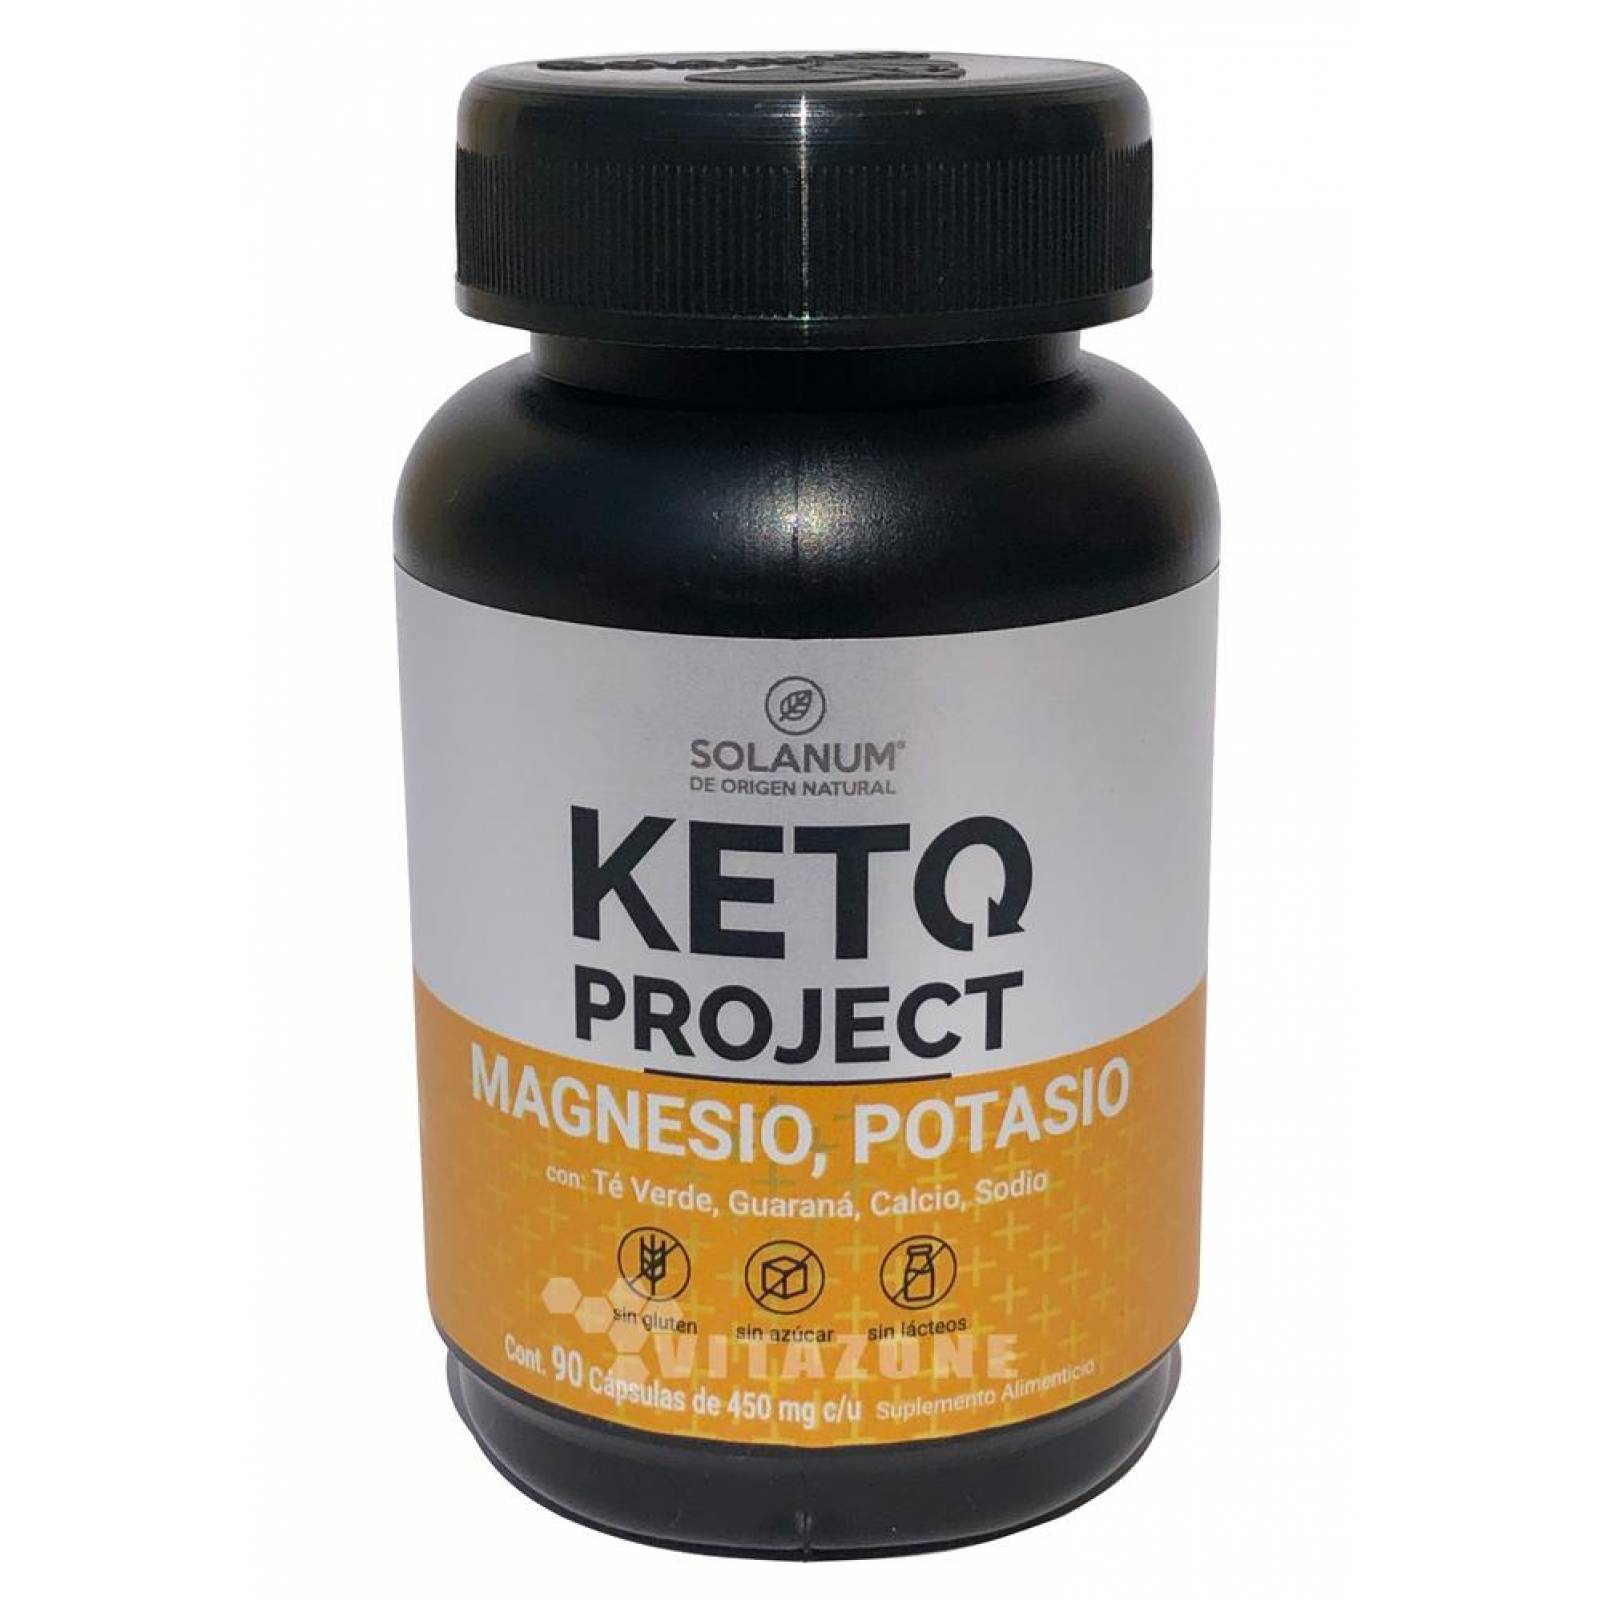 Keto Magnesio y Potasio 90 cáps de 450 mg KETO PROJECT 